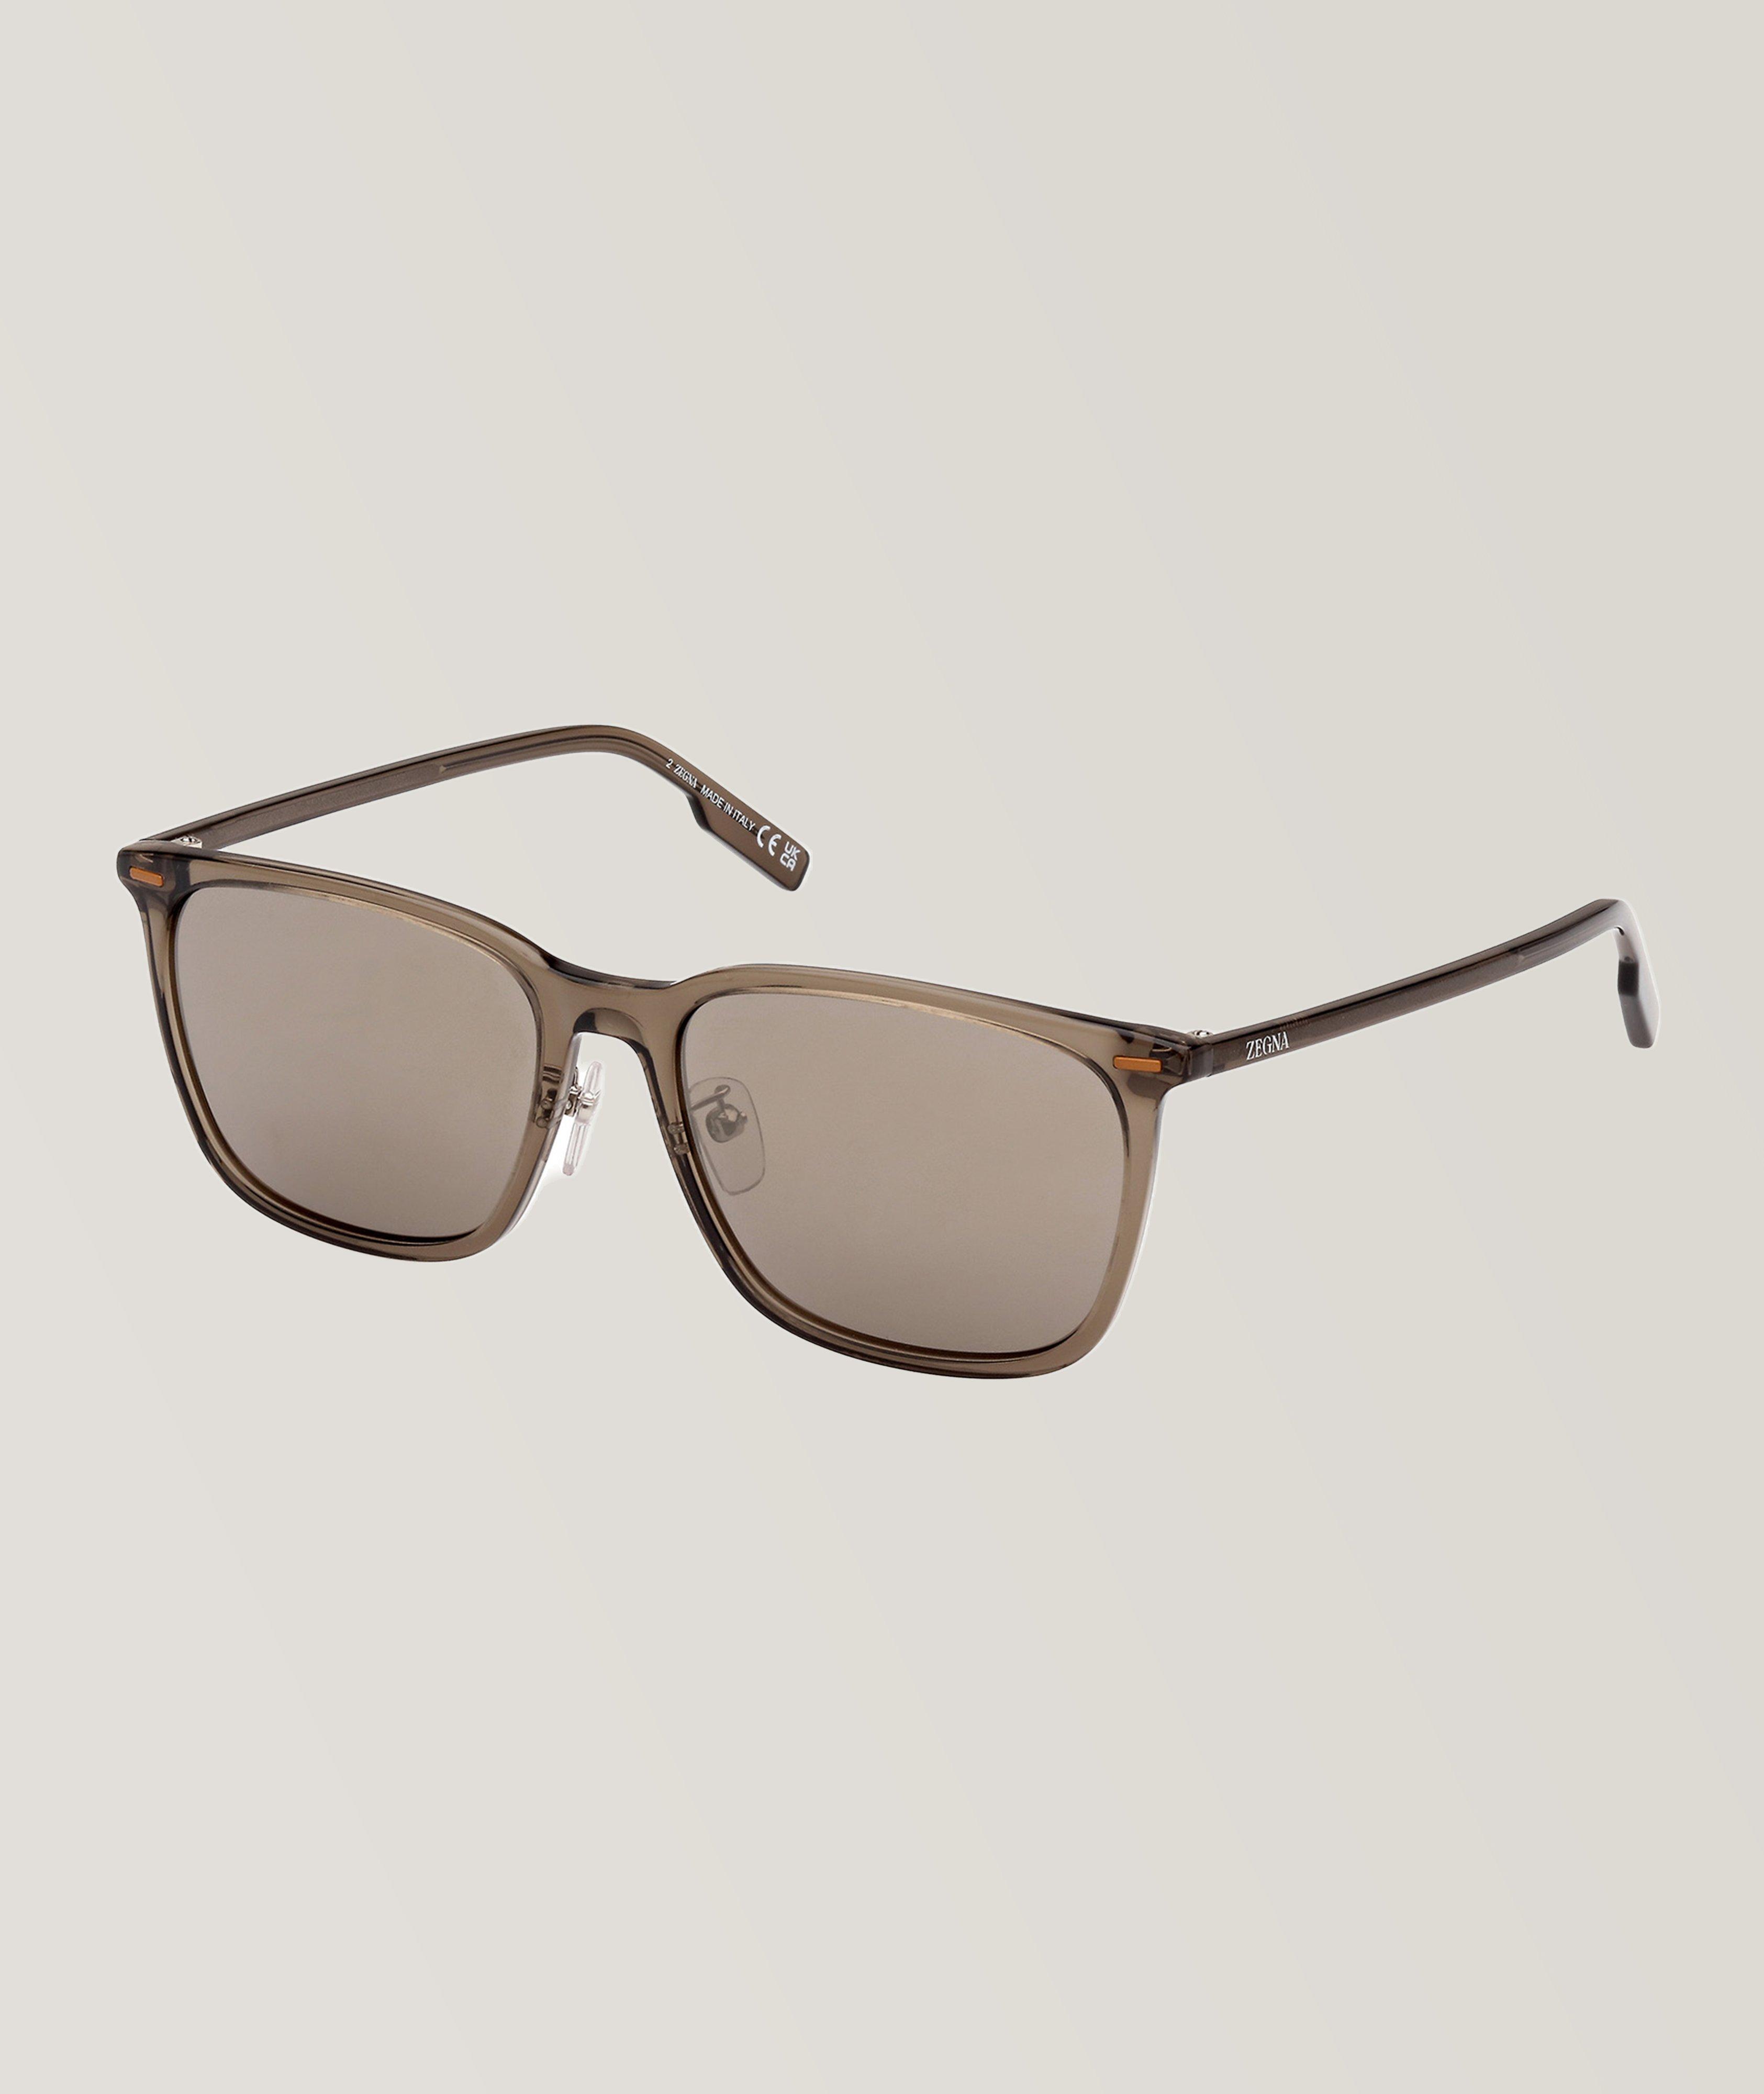 Zegna Full-Rimmed Rectangular Frame Sunglasses